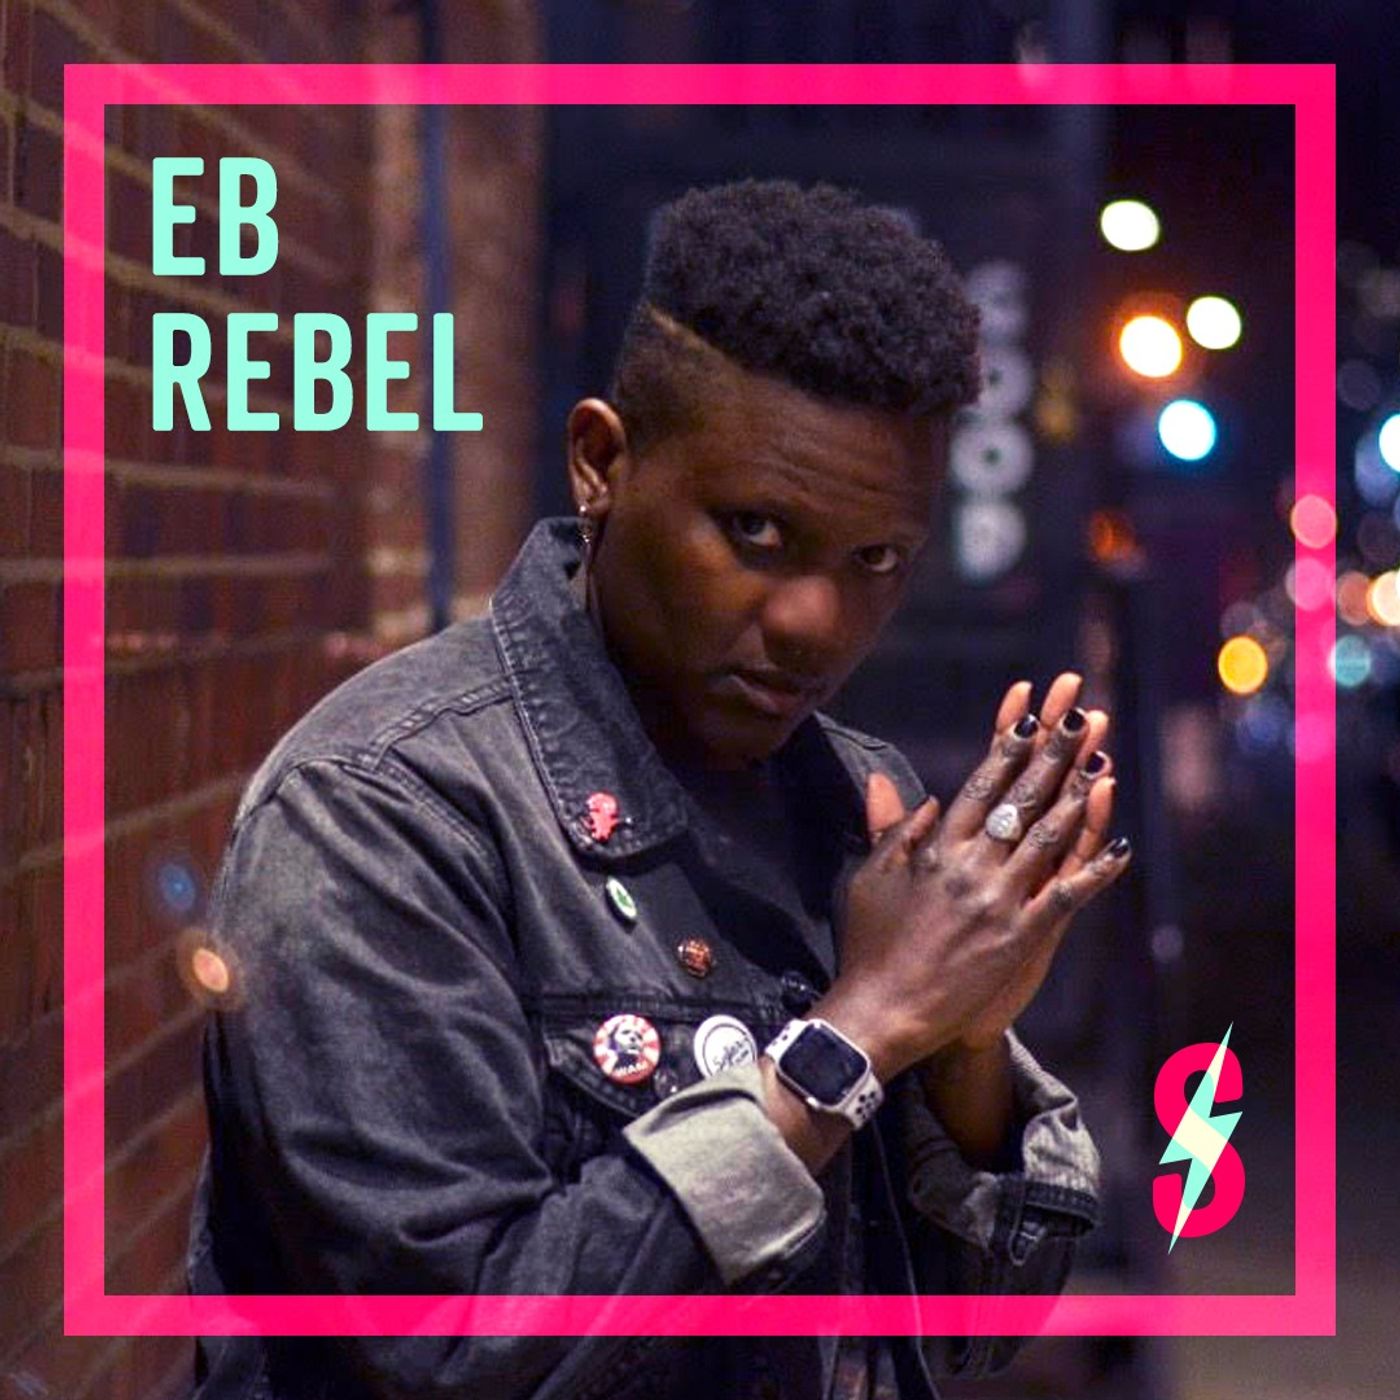 EB Rebel Loves Kanye West